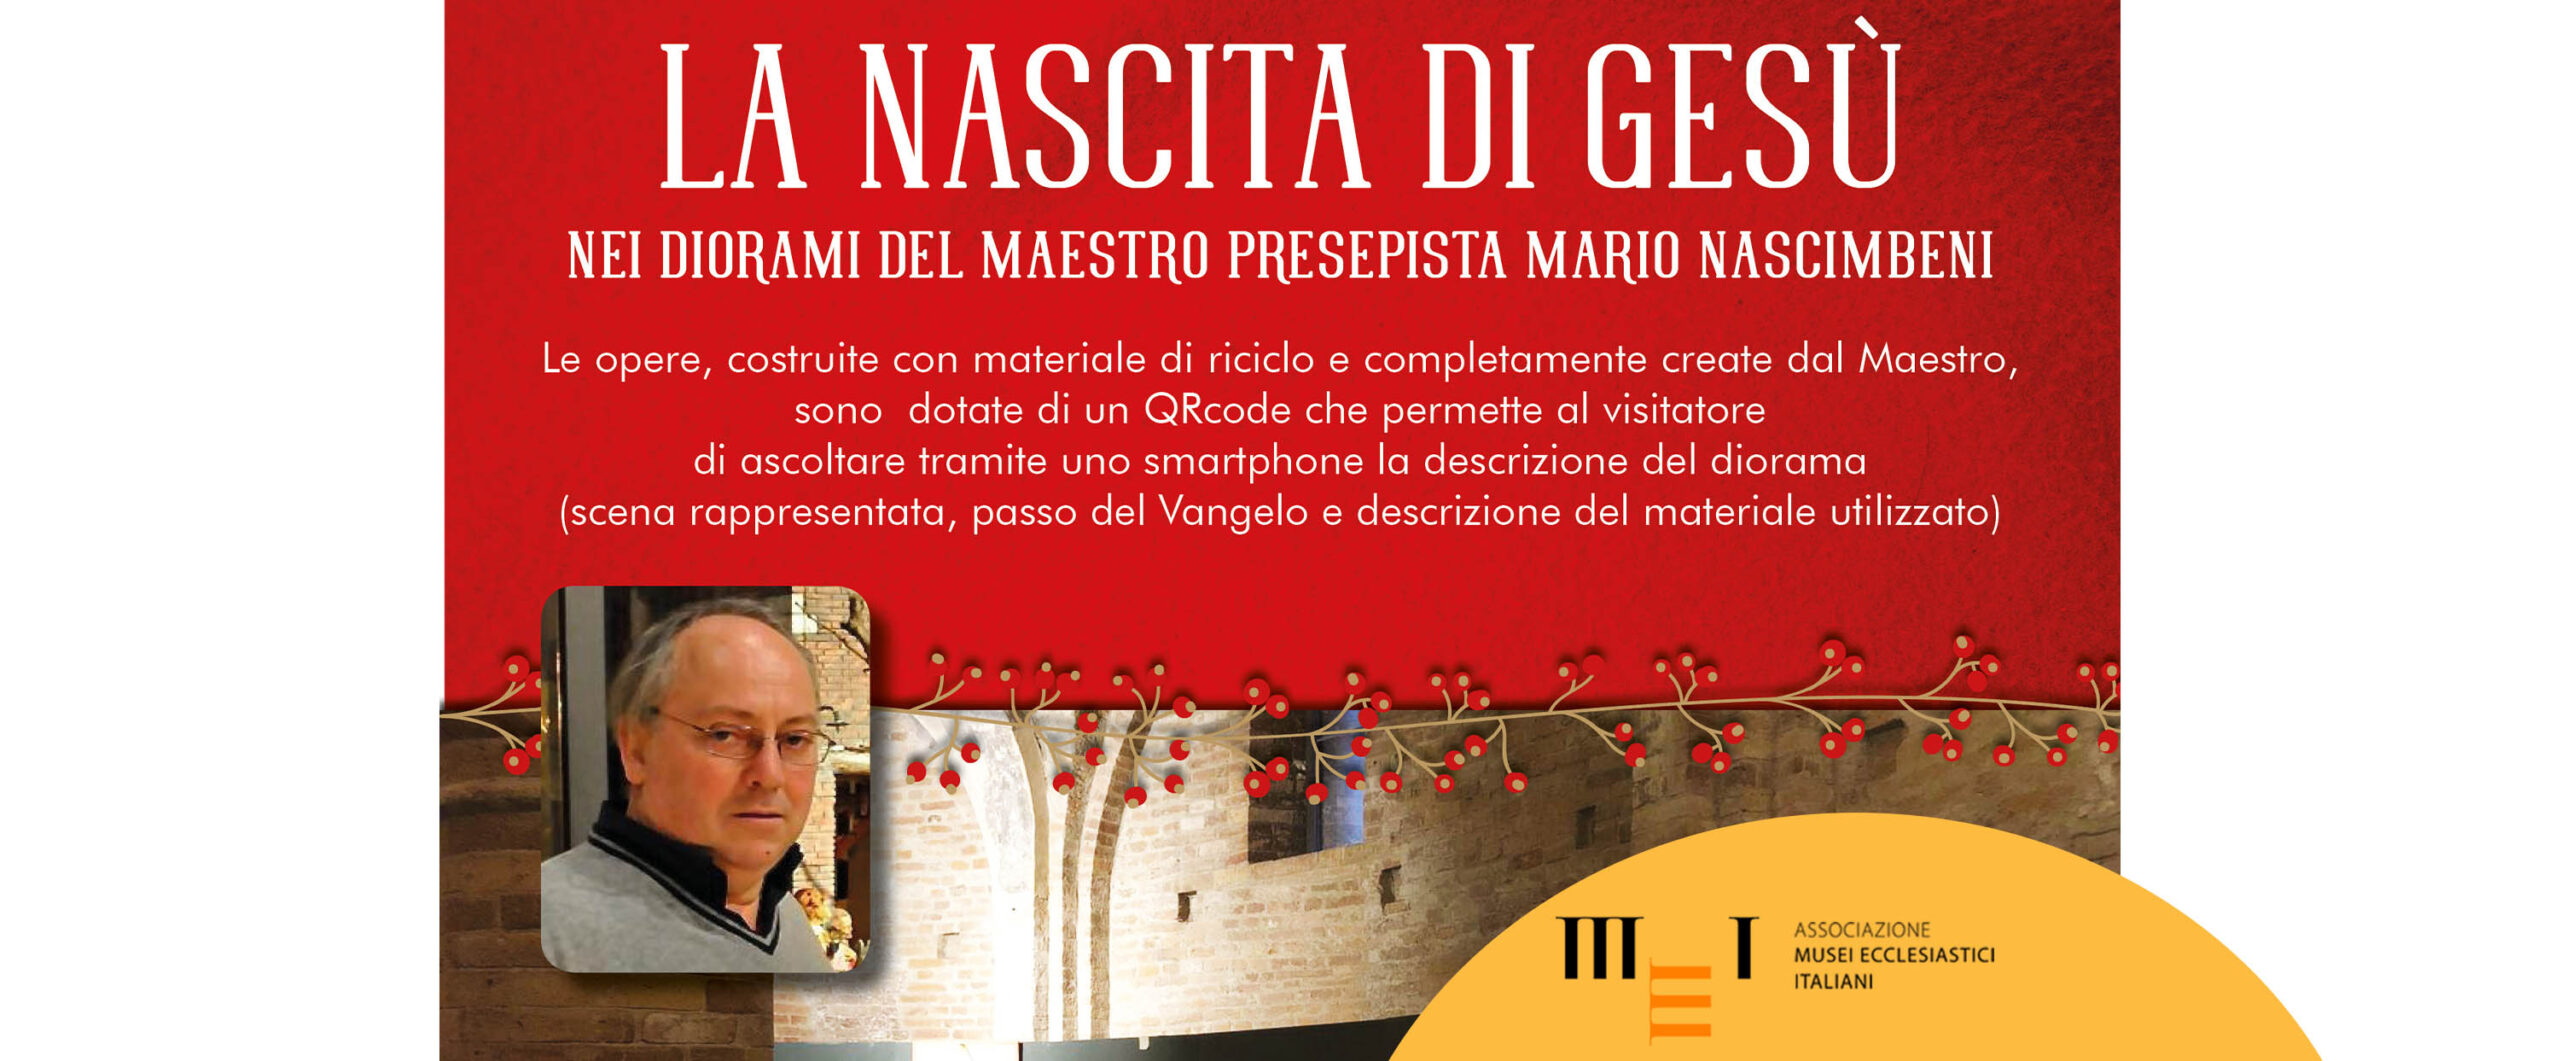 LA NASCITA DI GESÙ nei diorami del maestro presepista Mario Nascimbeni, Rotonda di San Lorenzo Mantova, dall'8 dicembre '23 al 7 gennaio '24